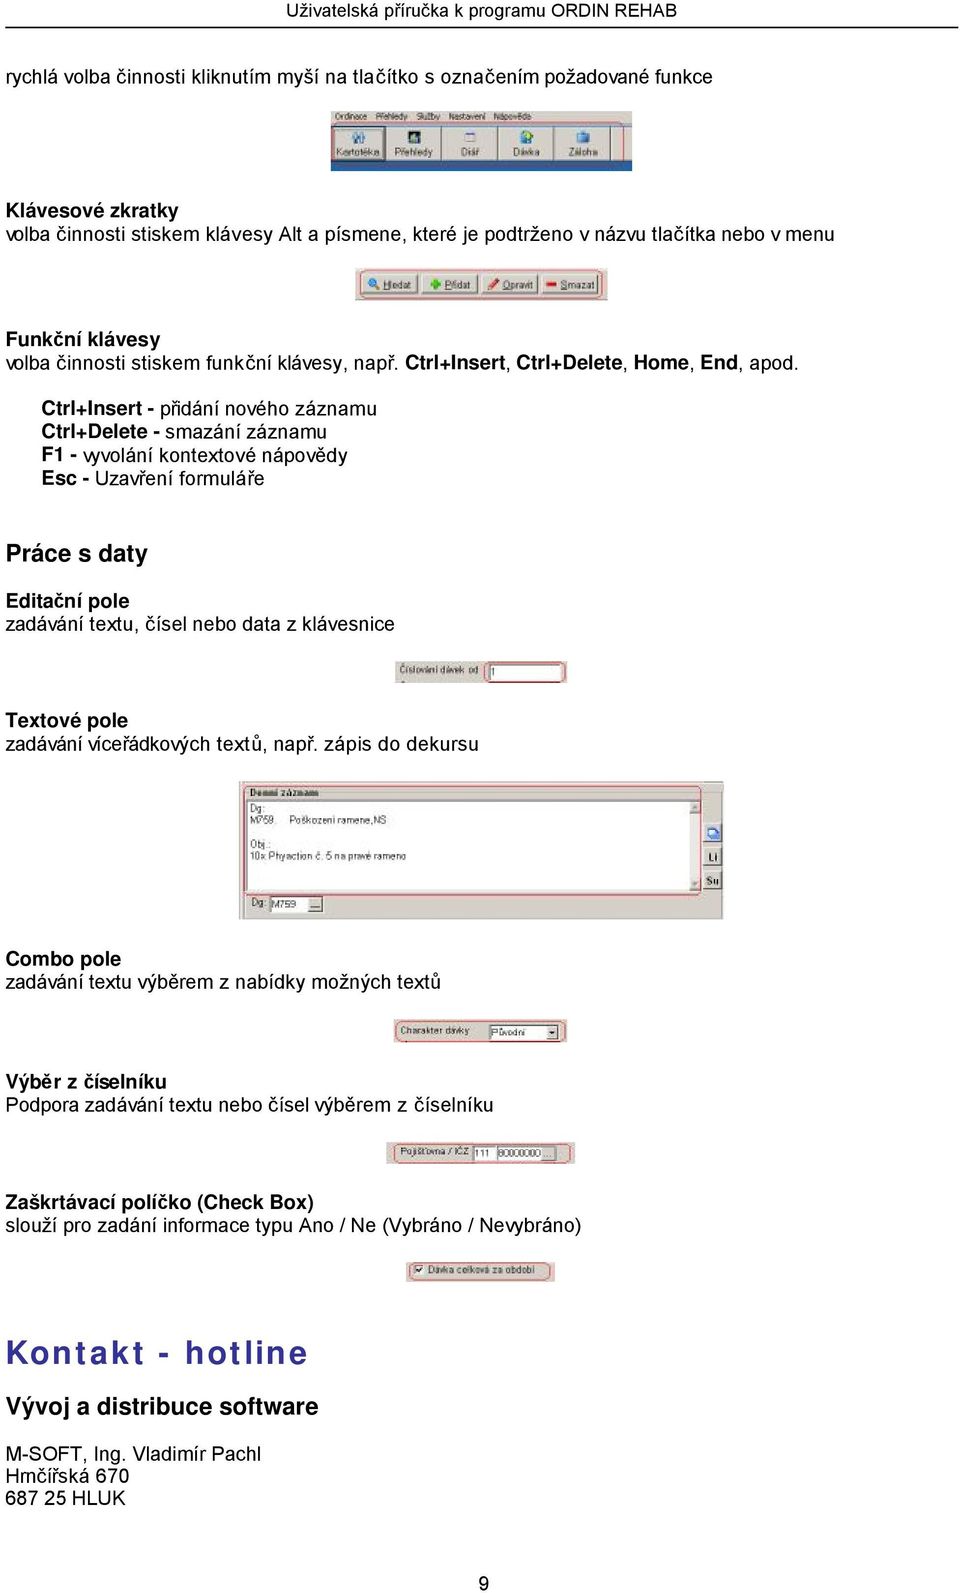 Ctrl+Insert - přidání nového záznamu Ctrl+Delete - smazání záznamu F1 - vyvolání kontextové nápovědy Esc - Uzavření formuláře Práce s daty Editační pole zadávání textu, čísel nebo data z klávesnice